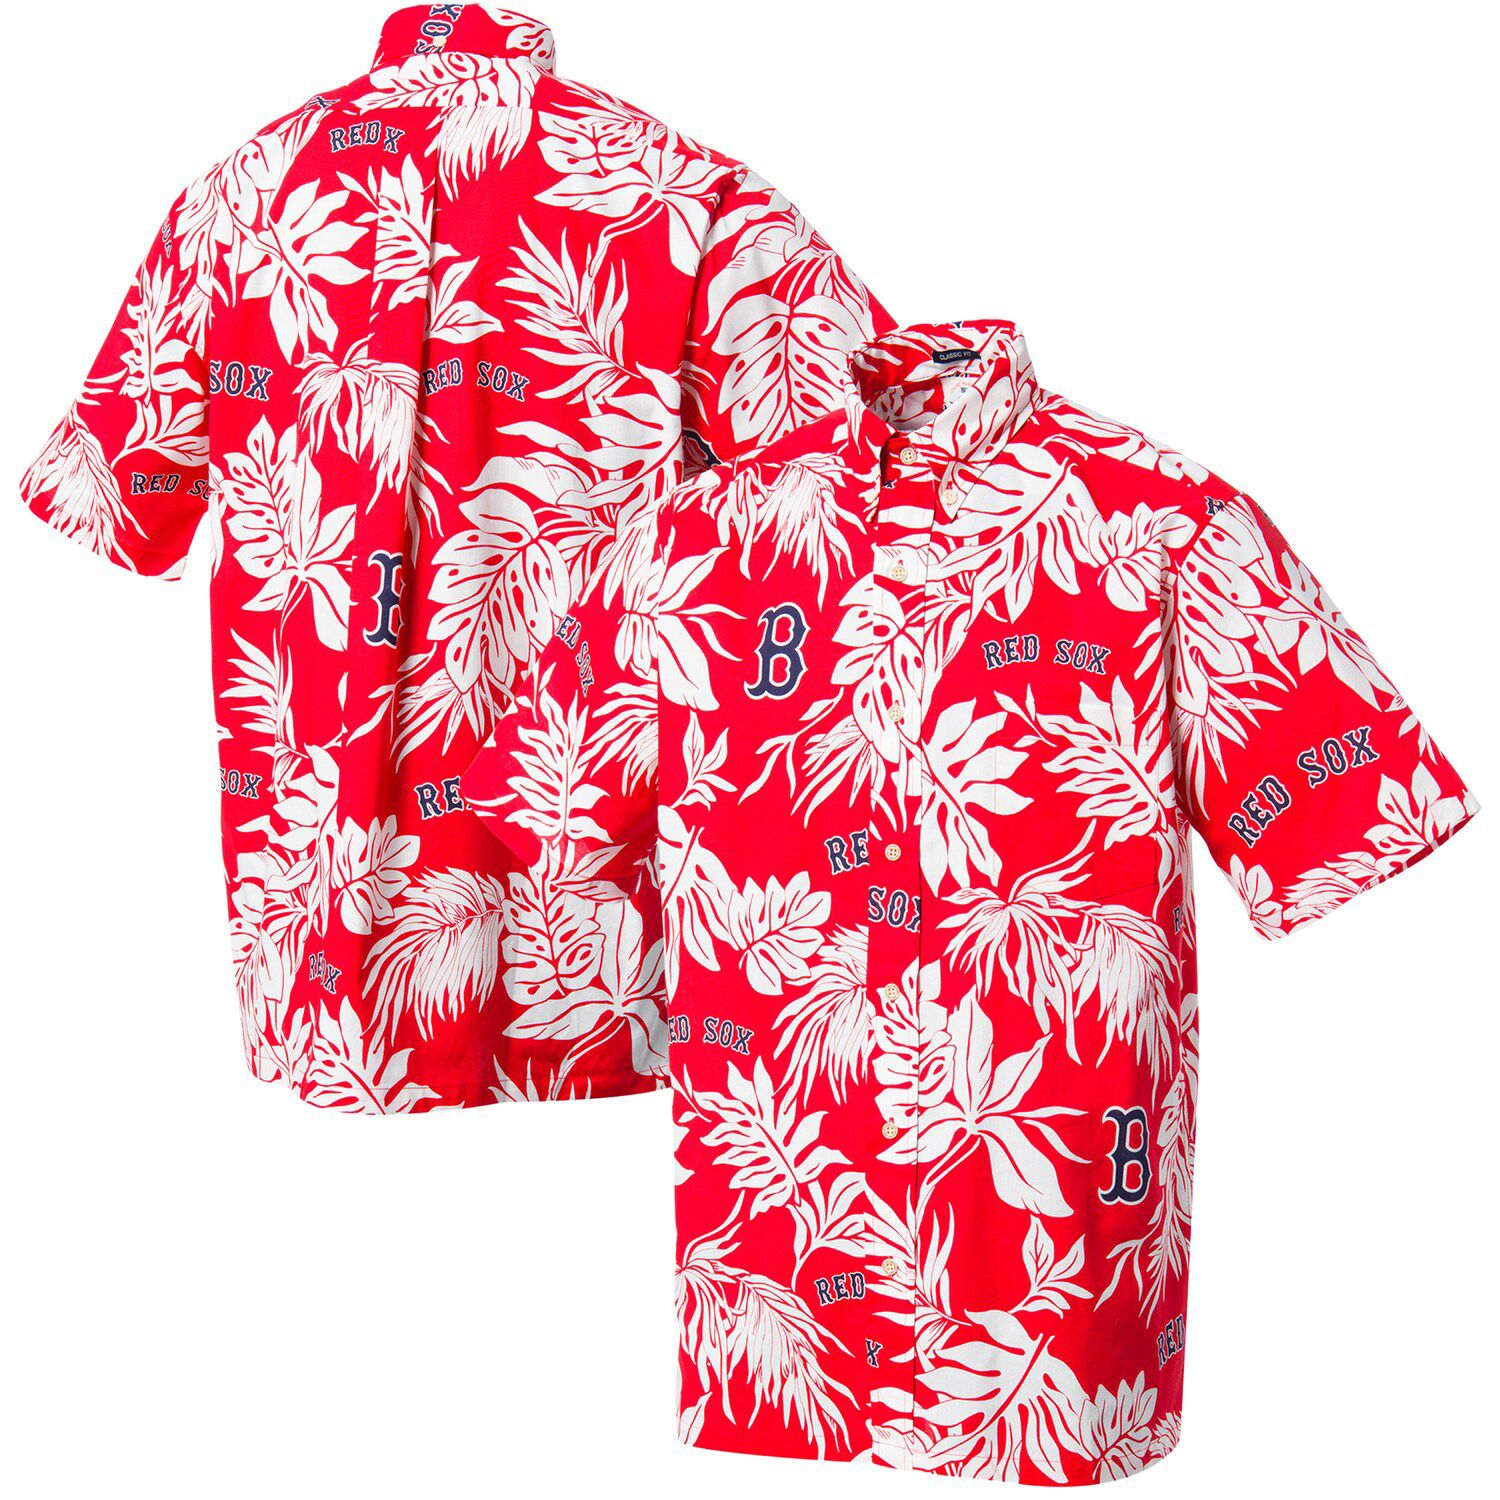 red sox hawaiian shirt